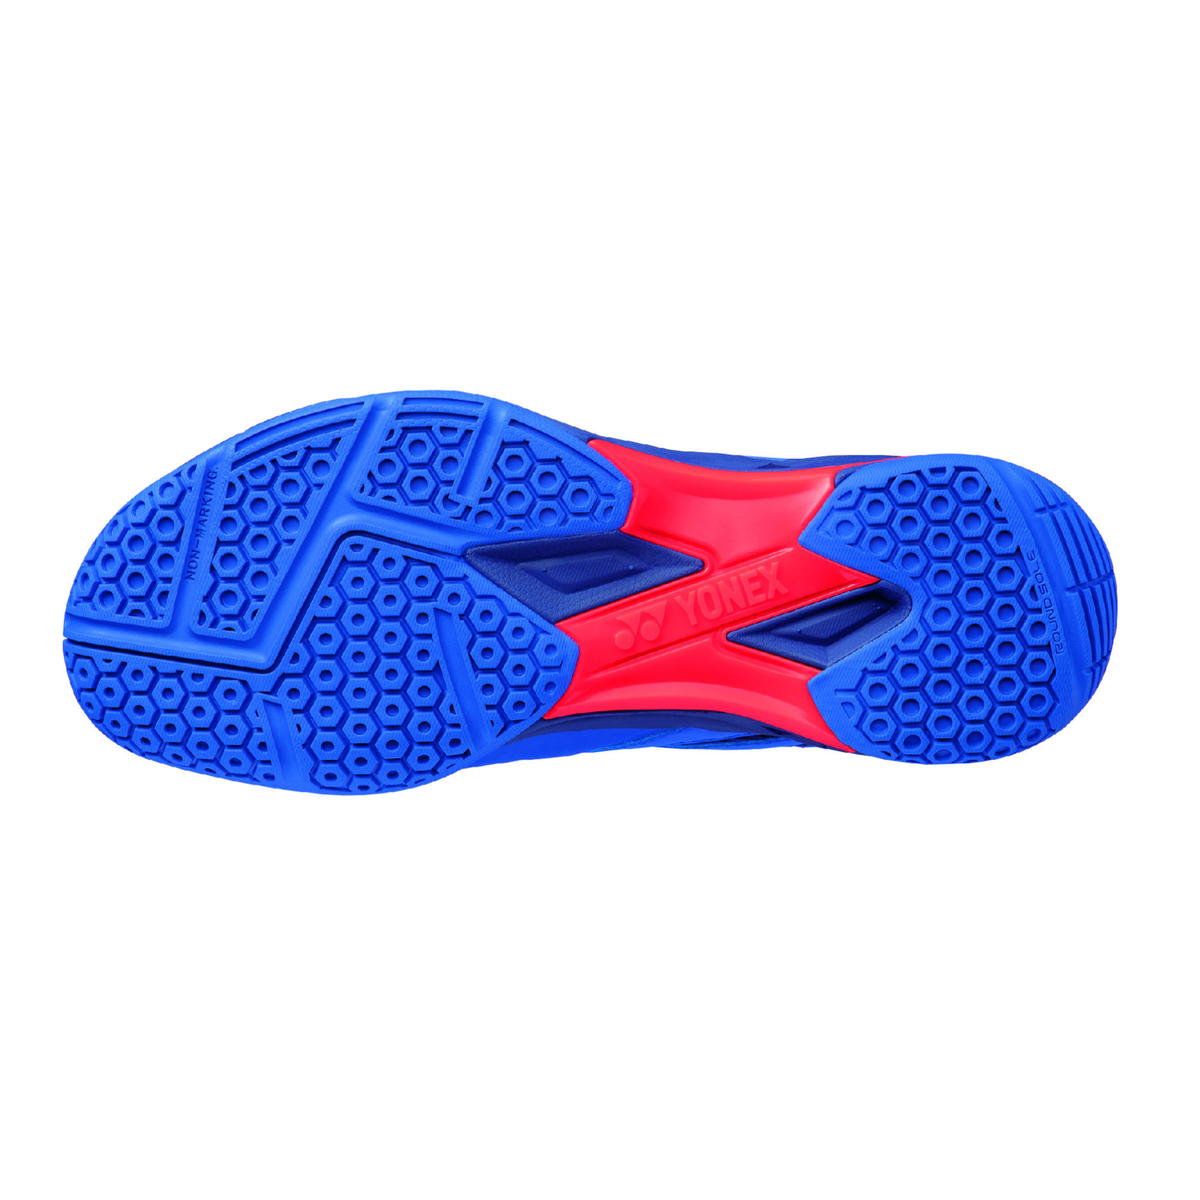 Yonex Mens Badminton Shoes, SHB57EX, Royal Blue, 41 EU